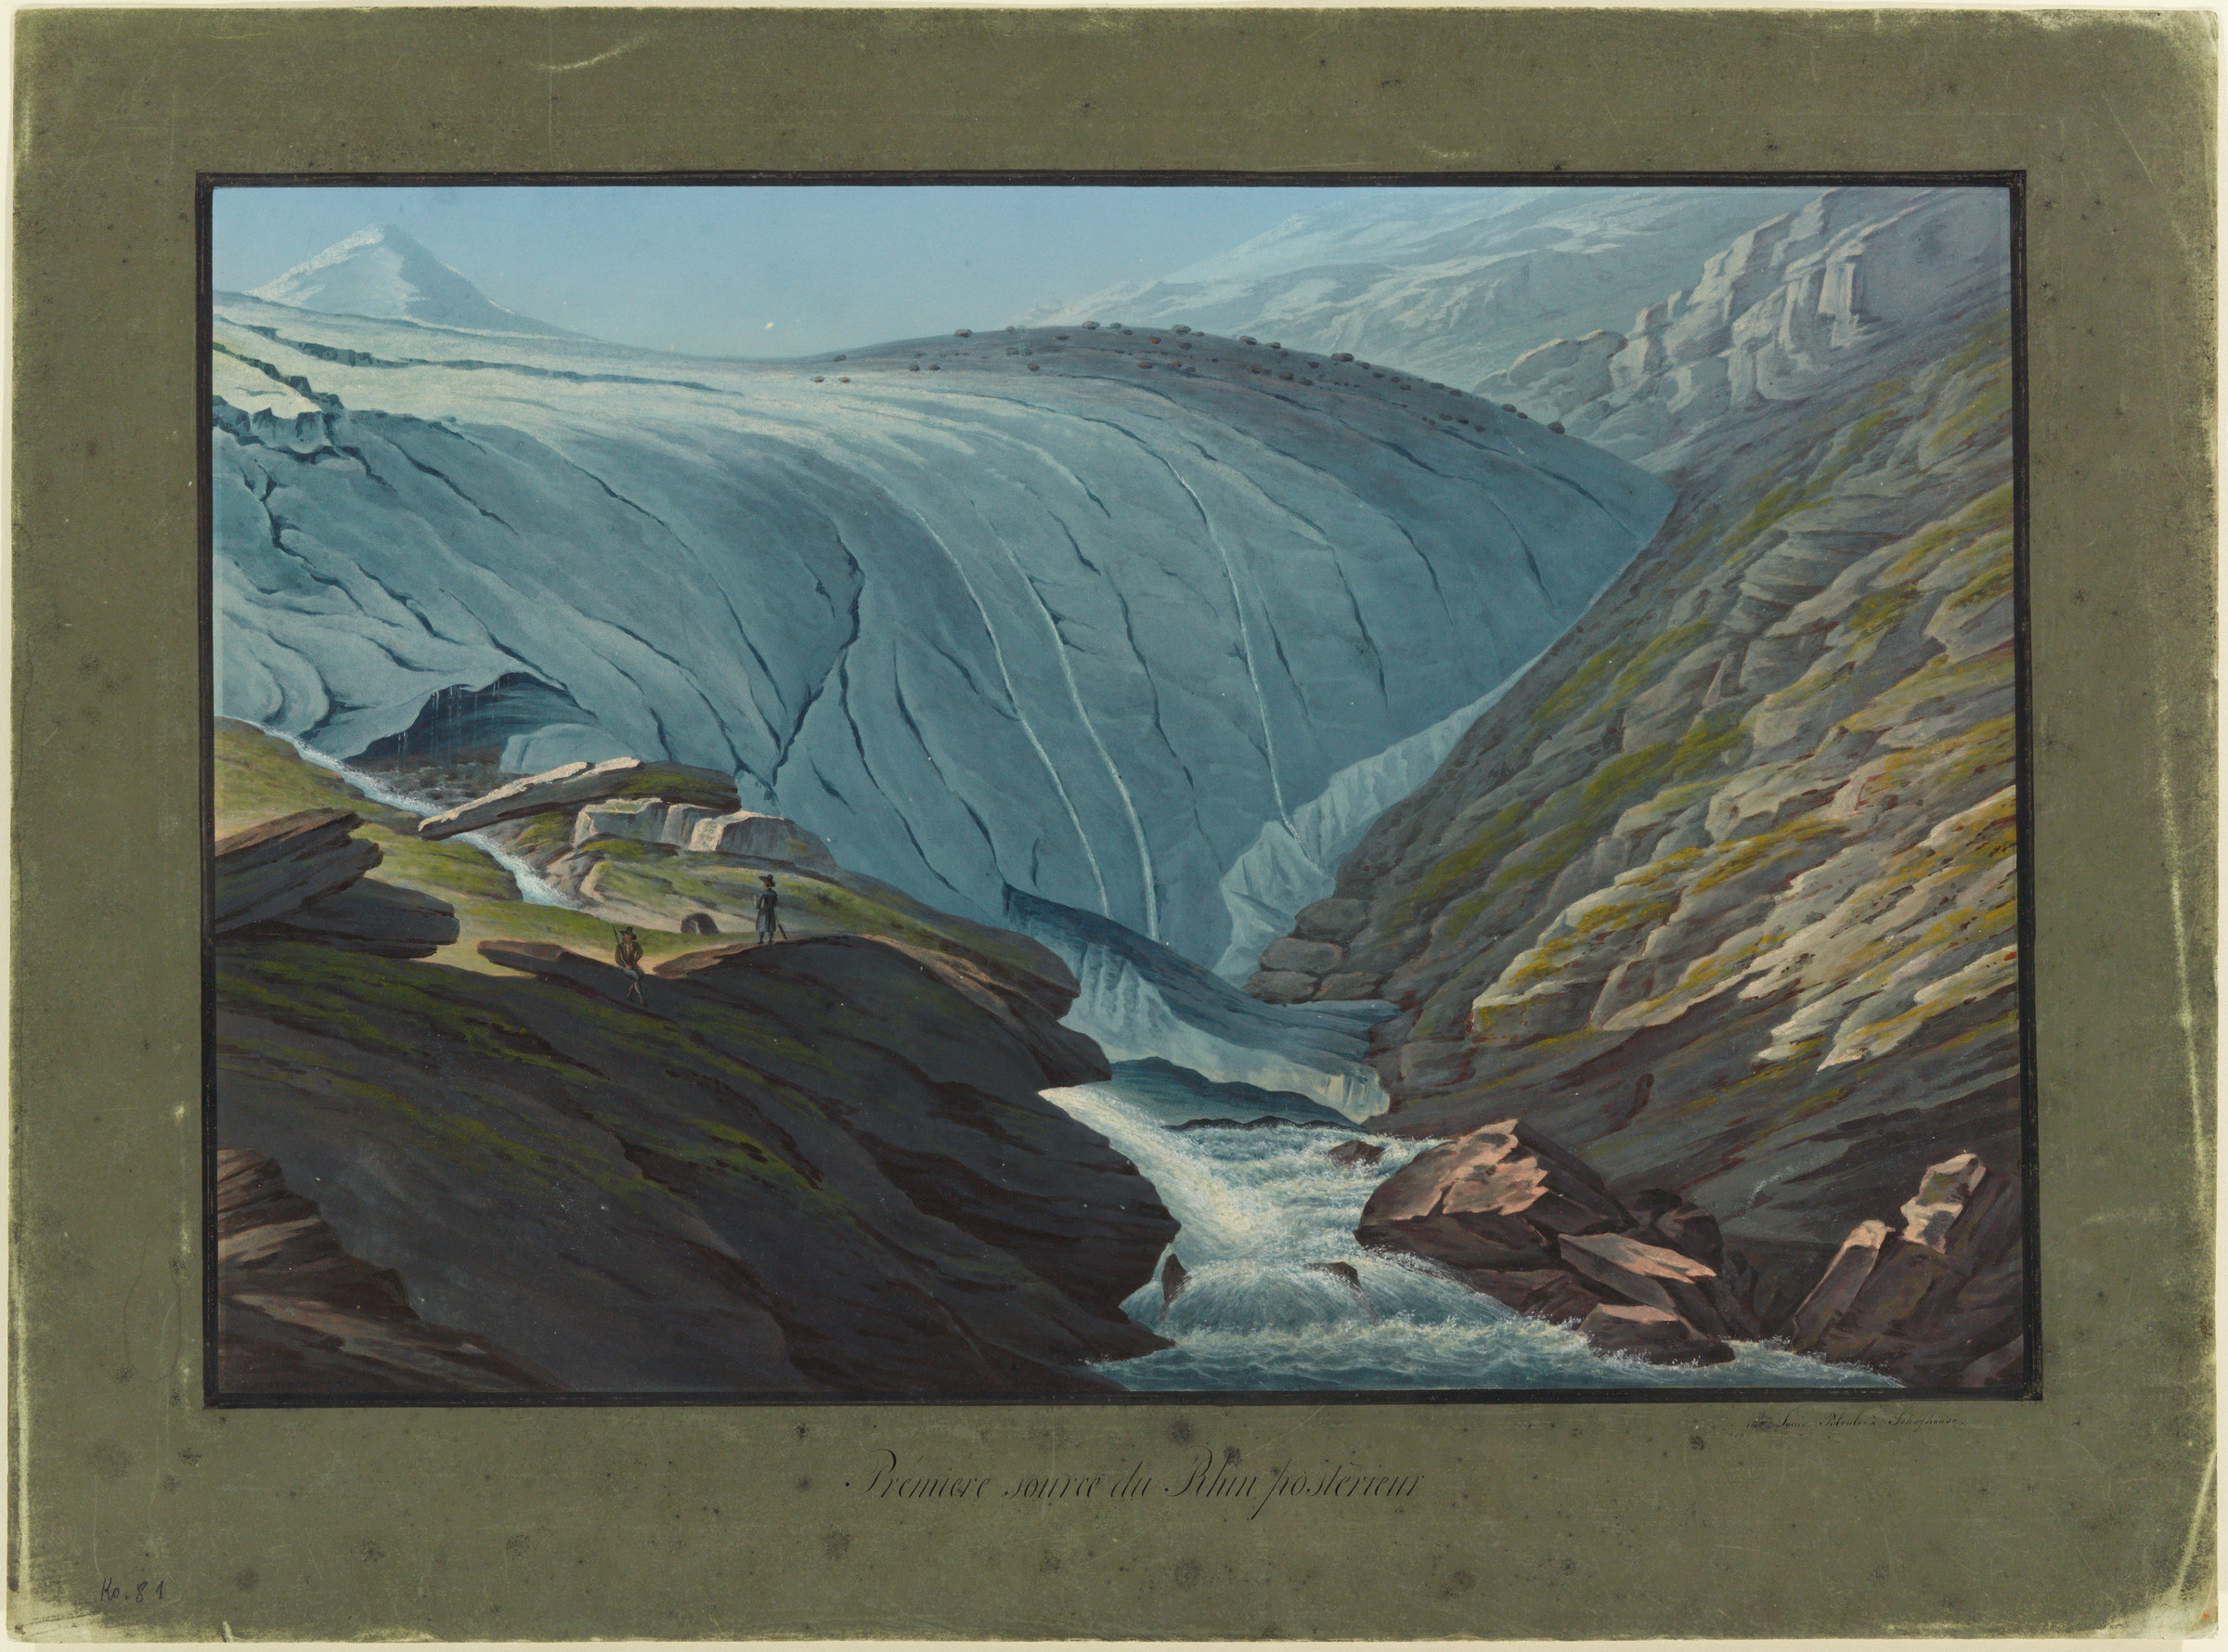 Fronte del ghiacciaio Paradies; in primo piano sgorga il Reno Posteriore